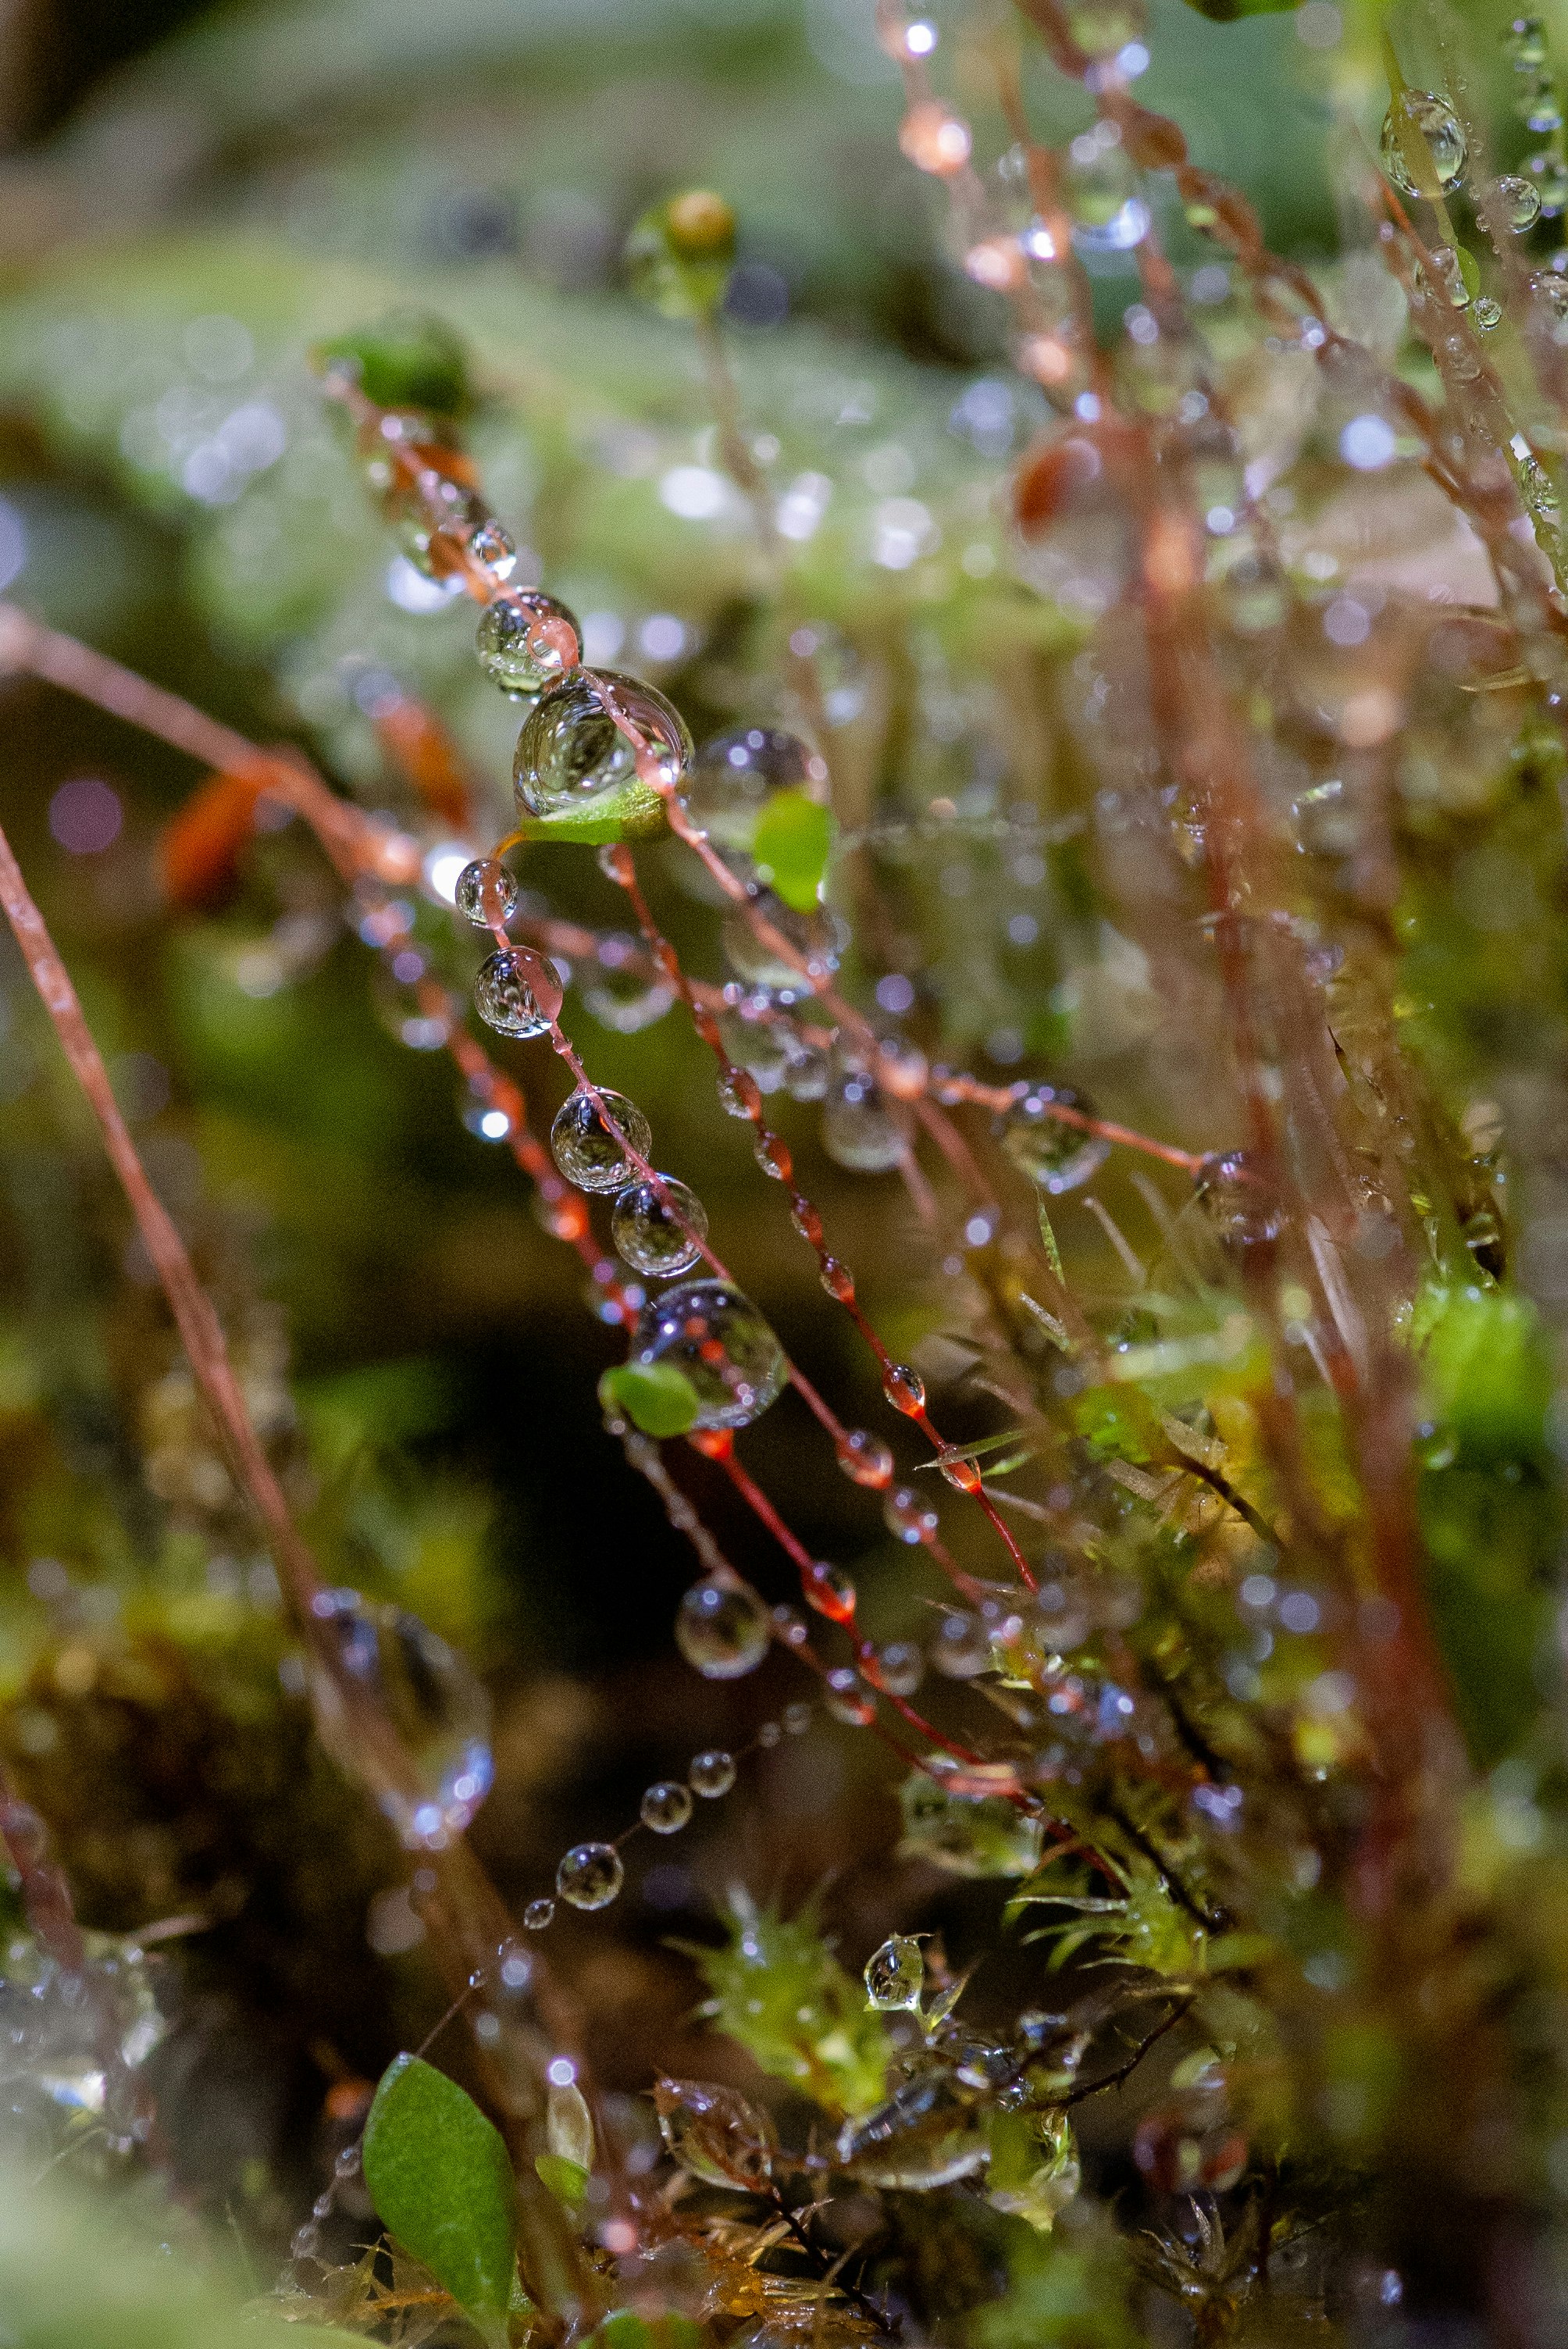 water dews on plants